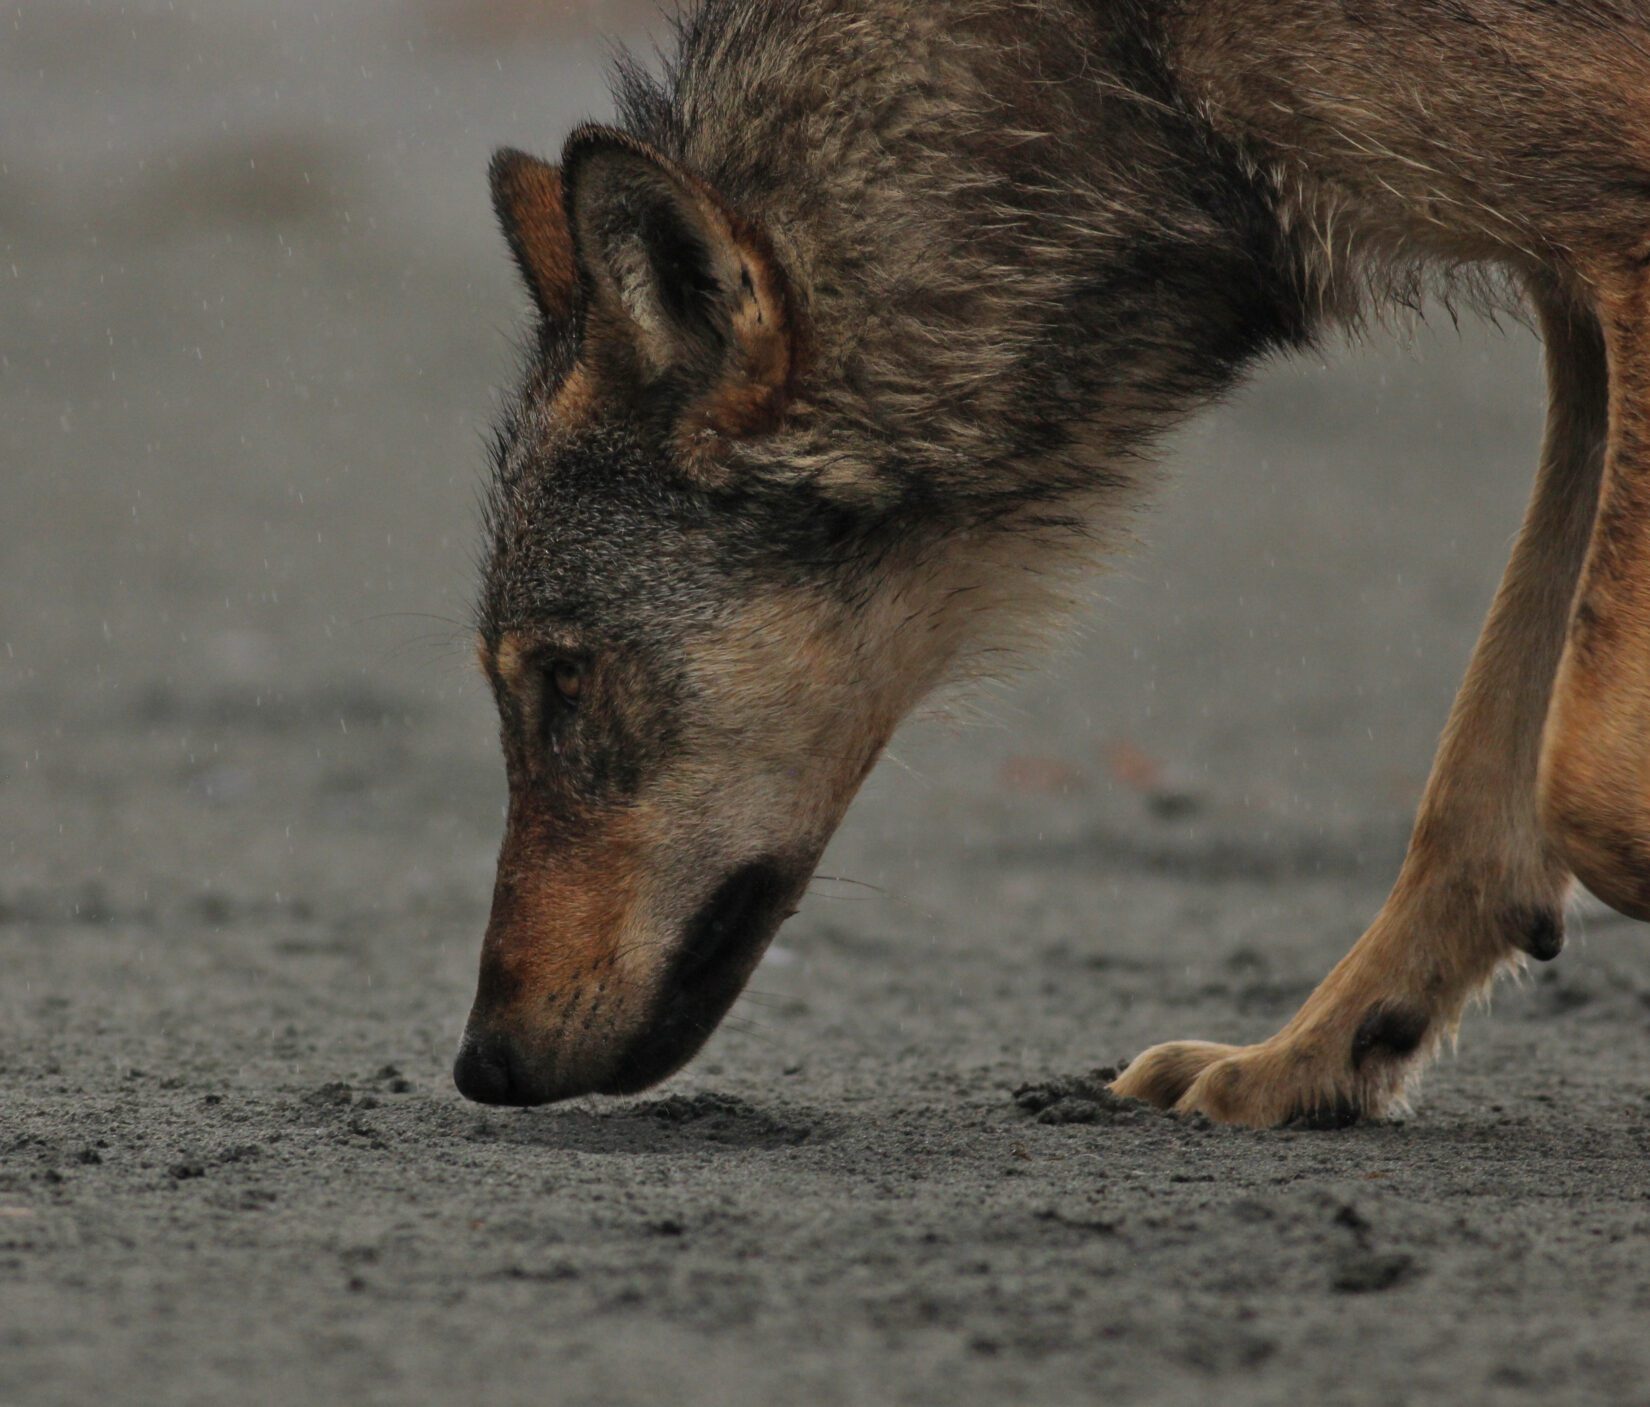 Wolf sniffing sandy ground